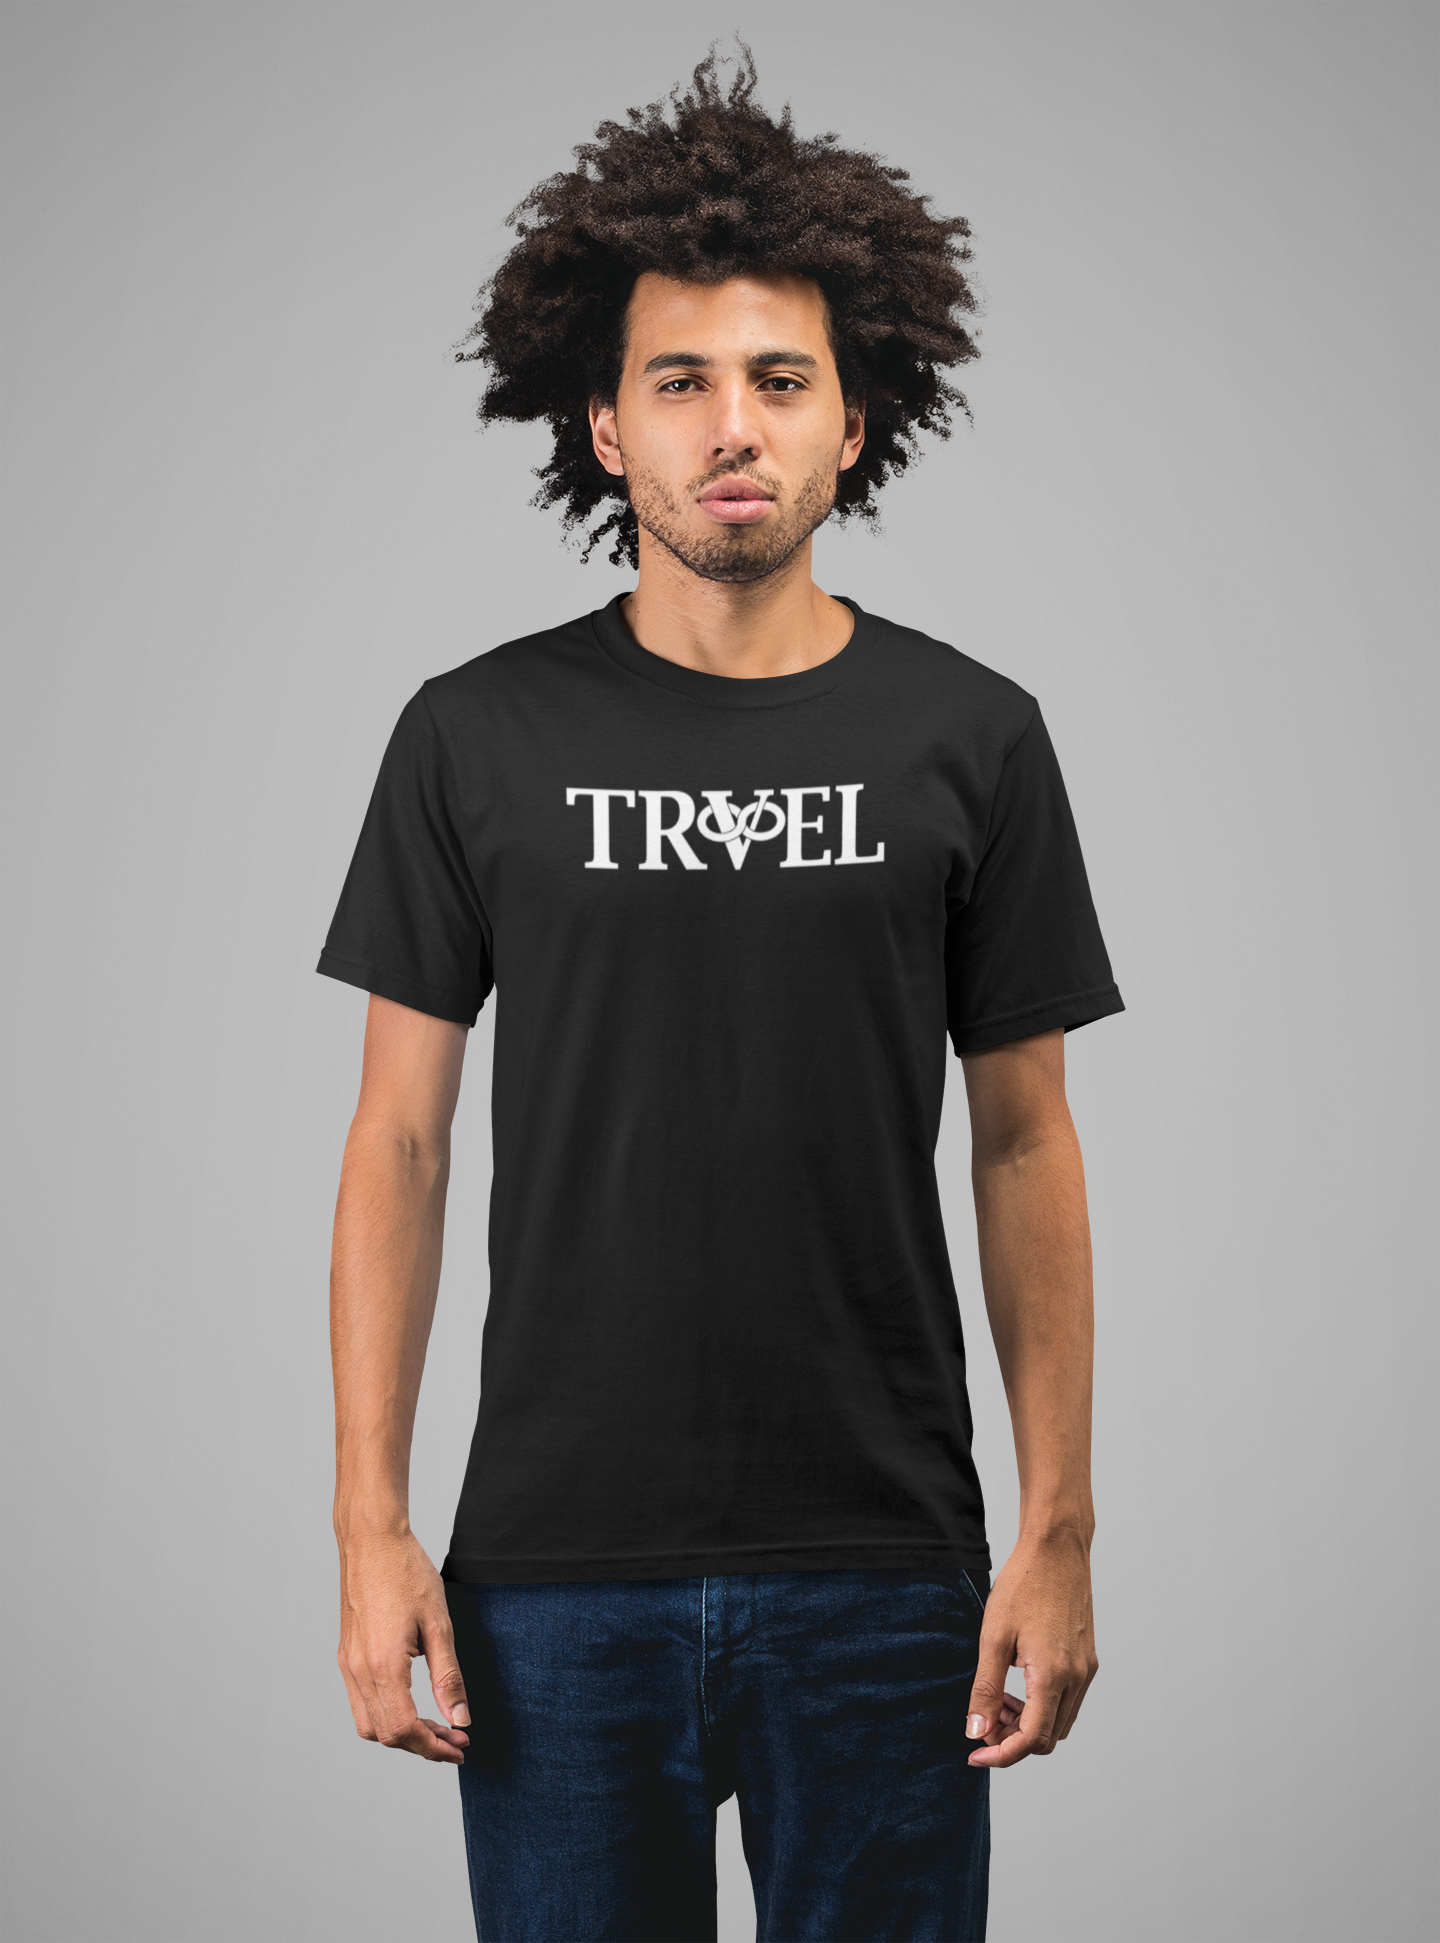 Premium White Print Travel T-Shirt